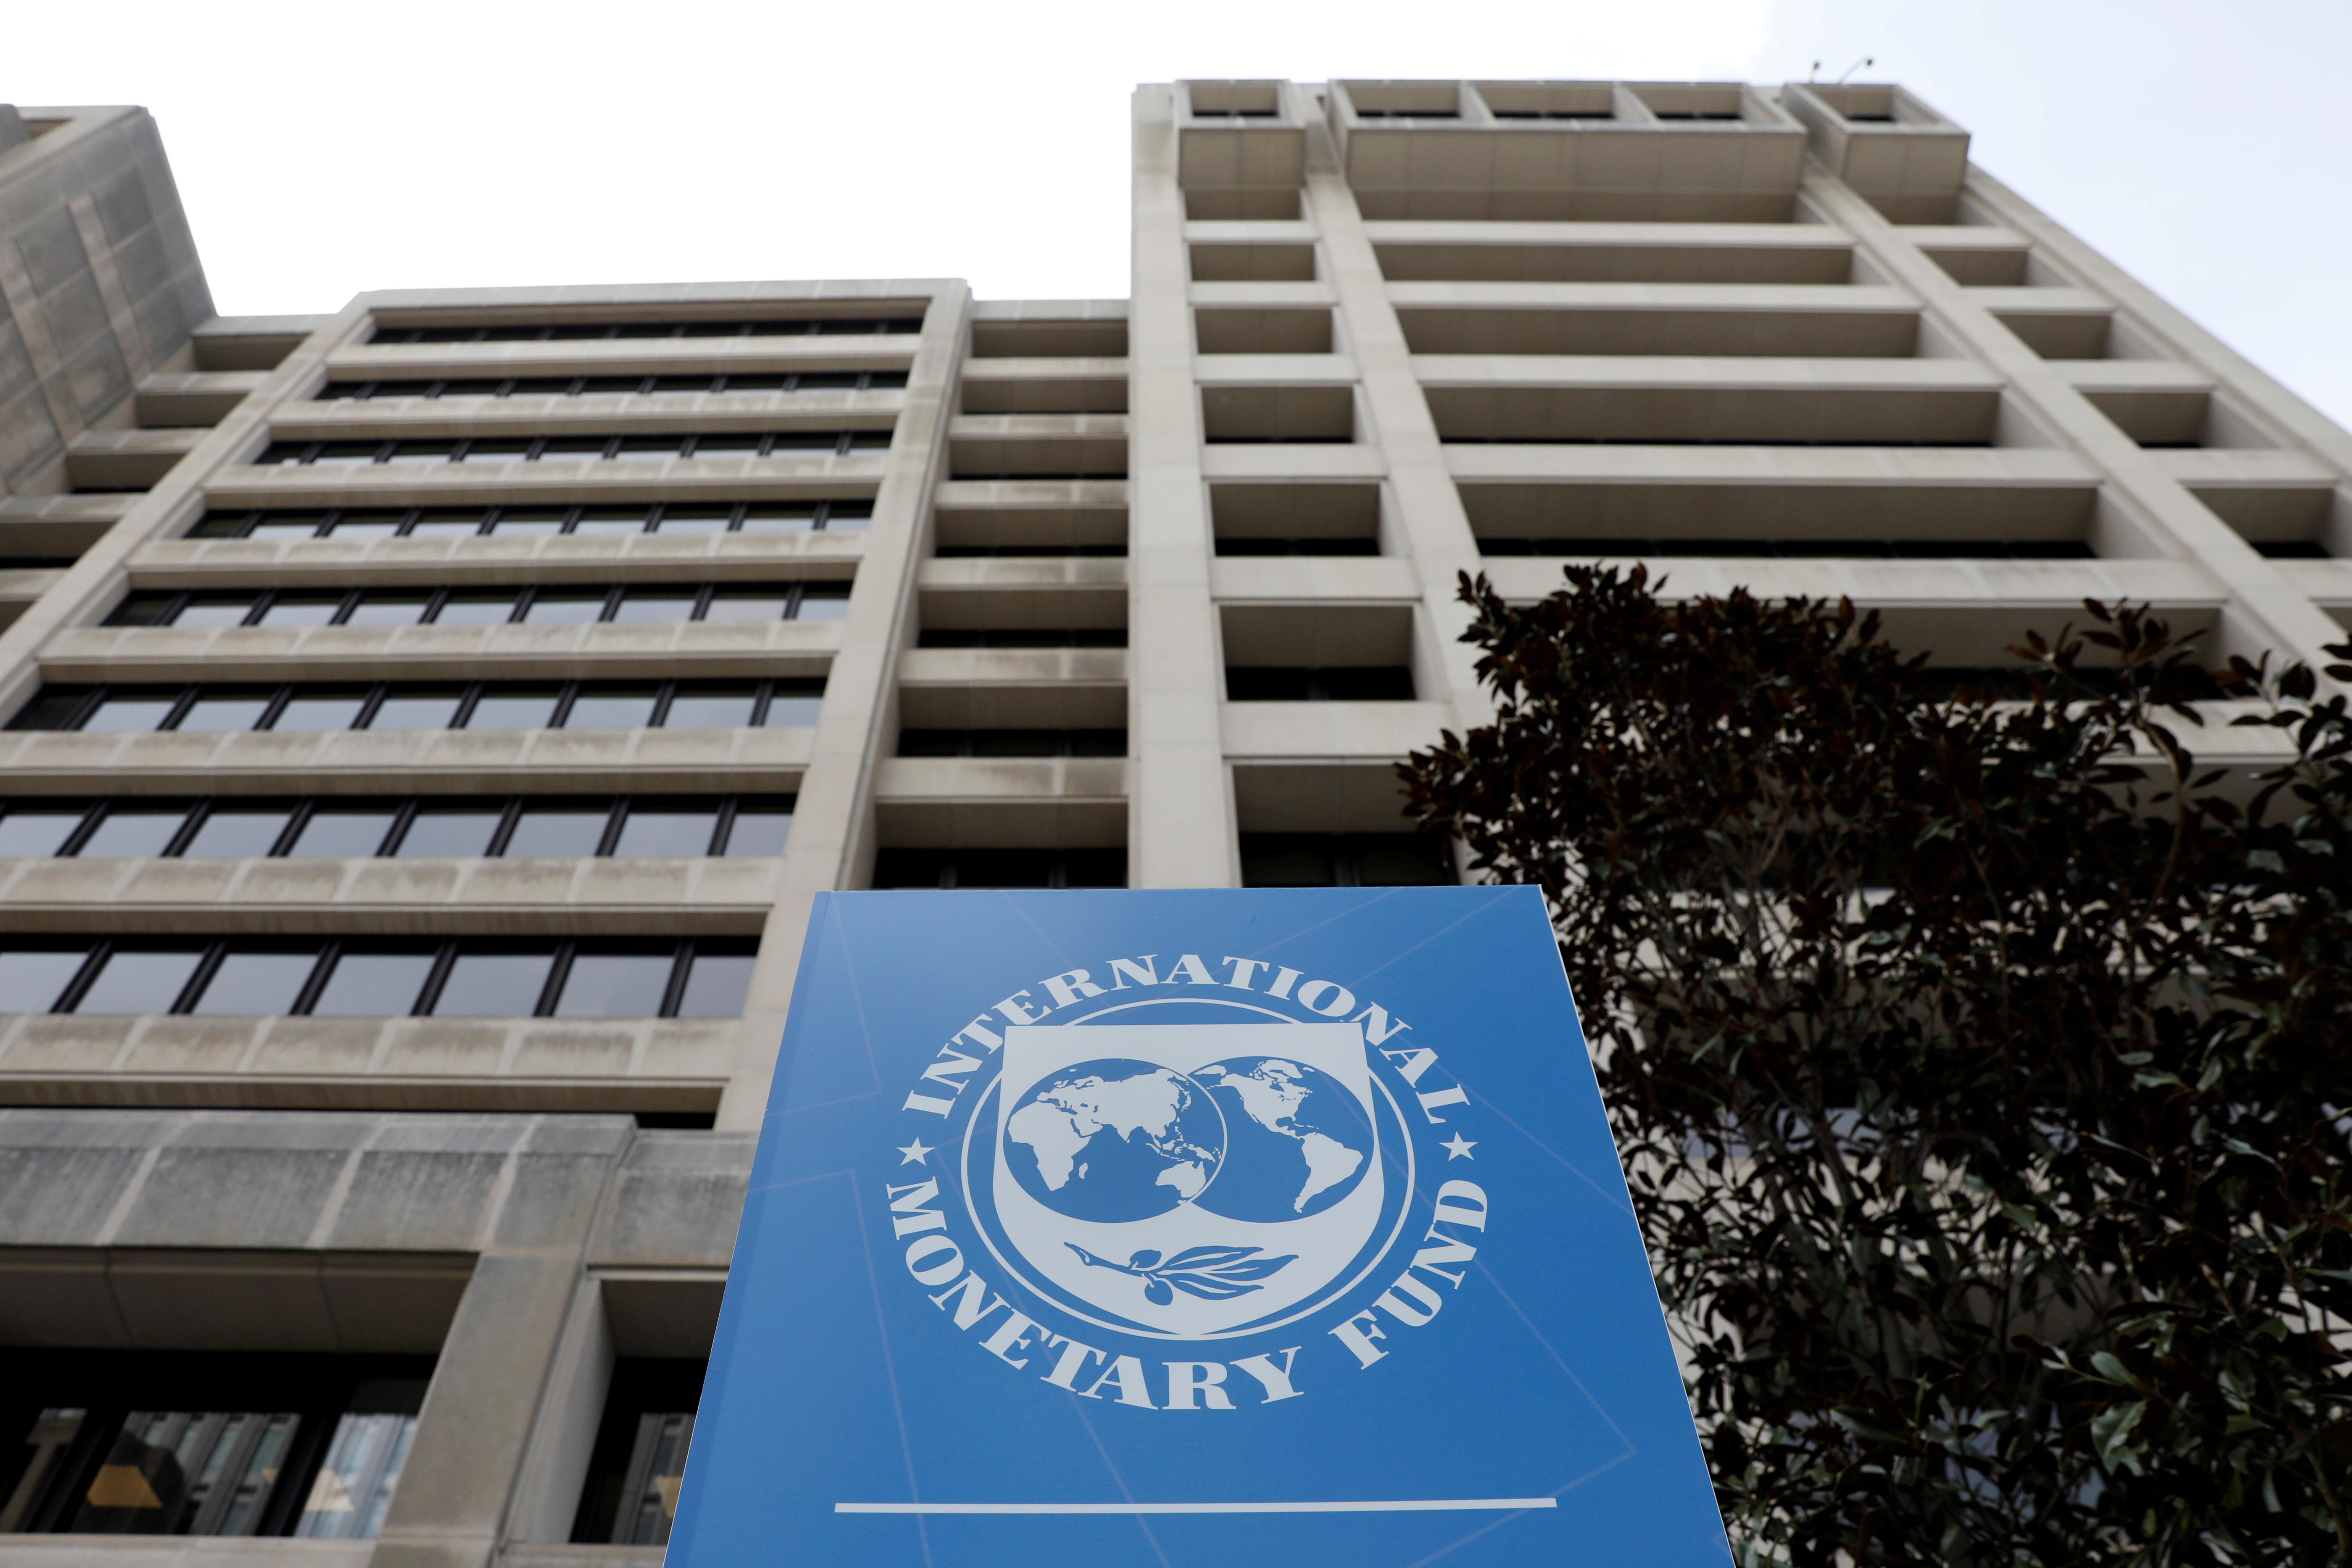 Всемирный валютный банк. Международный валютный фонд (МВФ) - International monetary Fund (IMF). Штаб квартира МВФ В Вашингтоне. Здание МВФ США. Флаг МВФ.